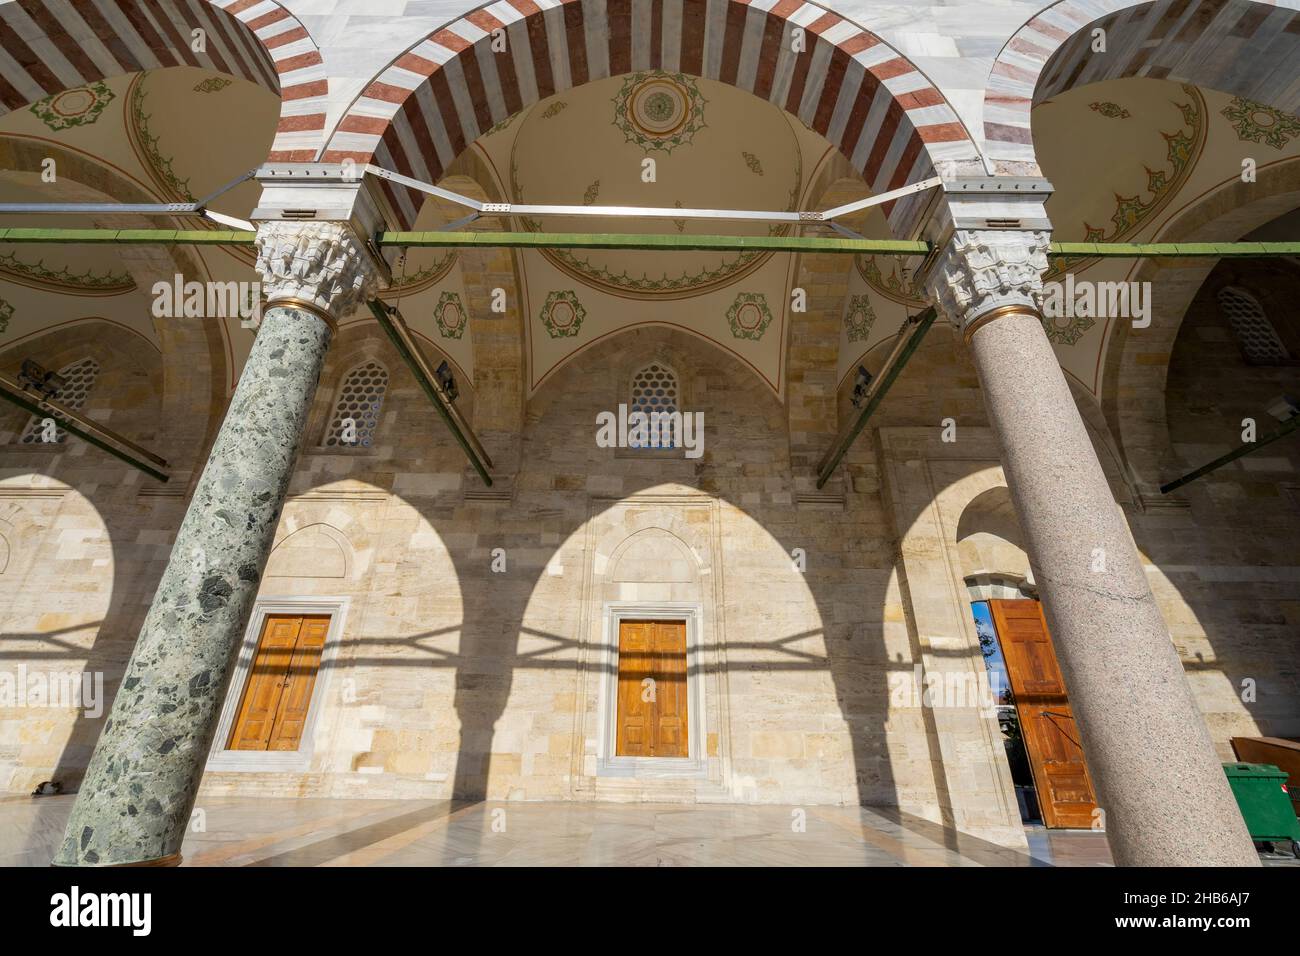 Vista dettagliata della Moschea Fatih (Moschea del Conquistatore) a Istanbul. La moschea Fatih è una moschea ottomana situata nel distretto di Fatih, in Turchia. Foto Stock